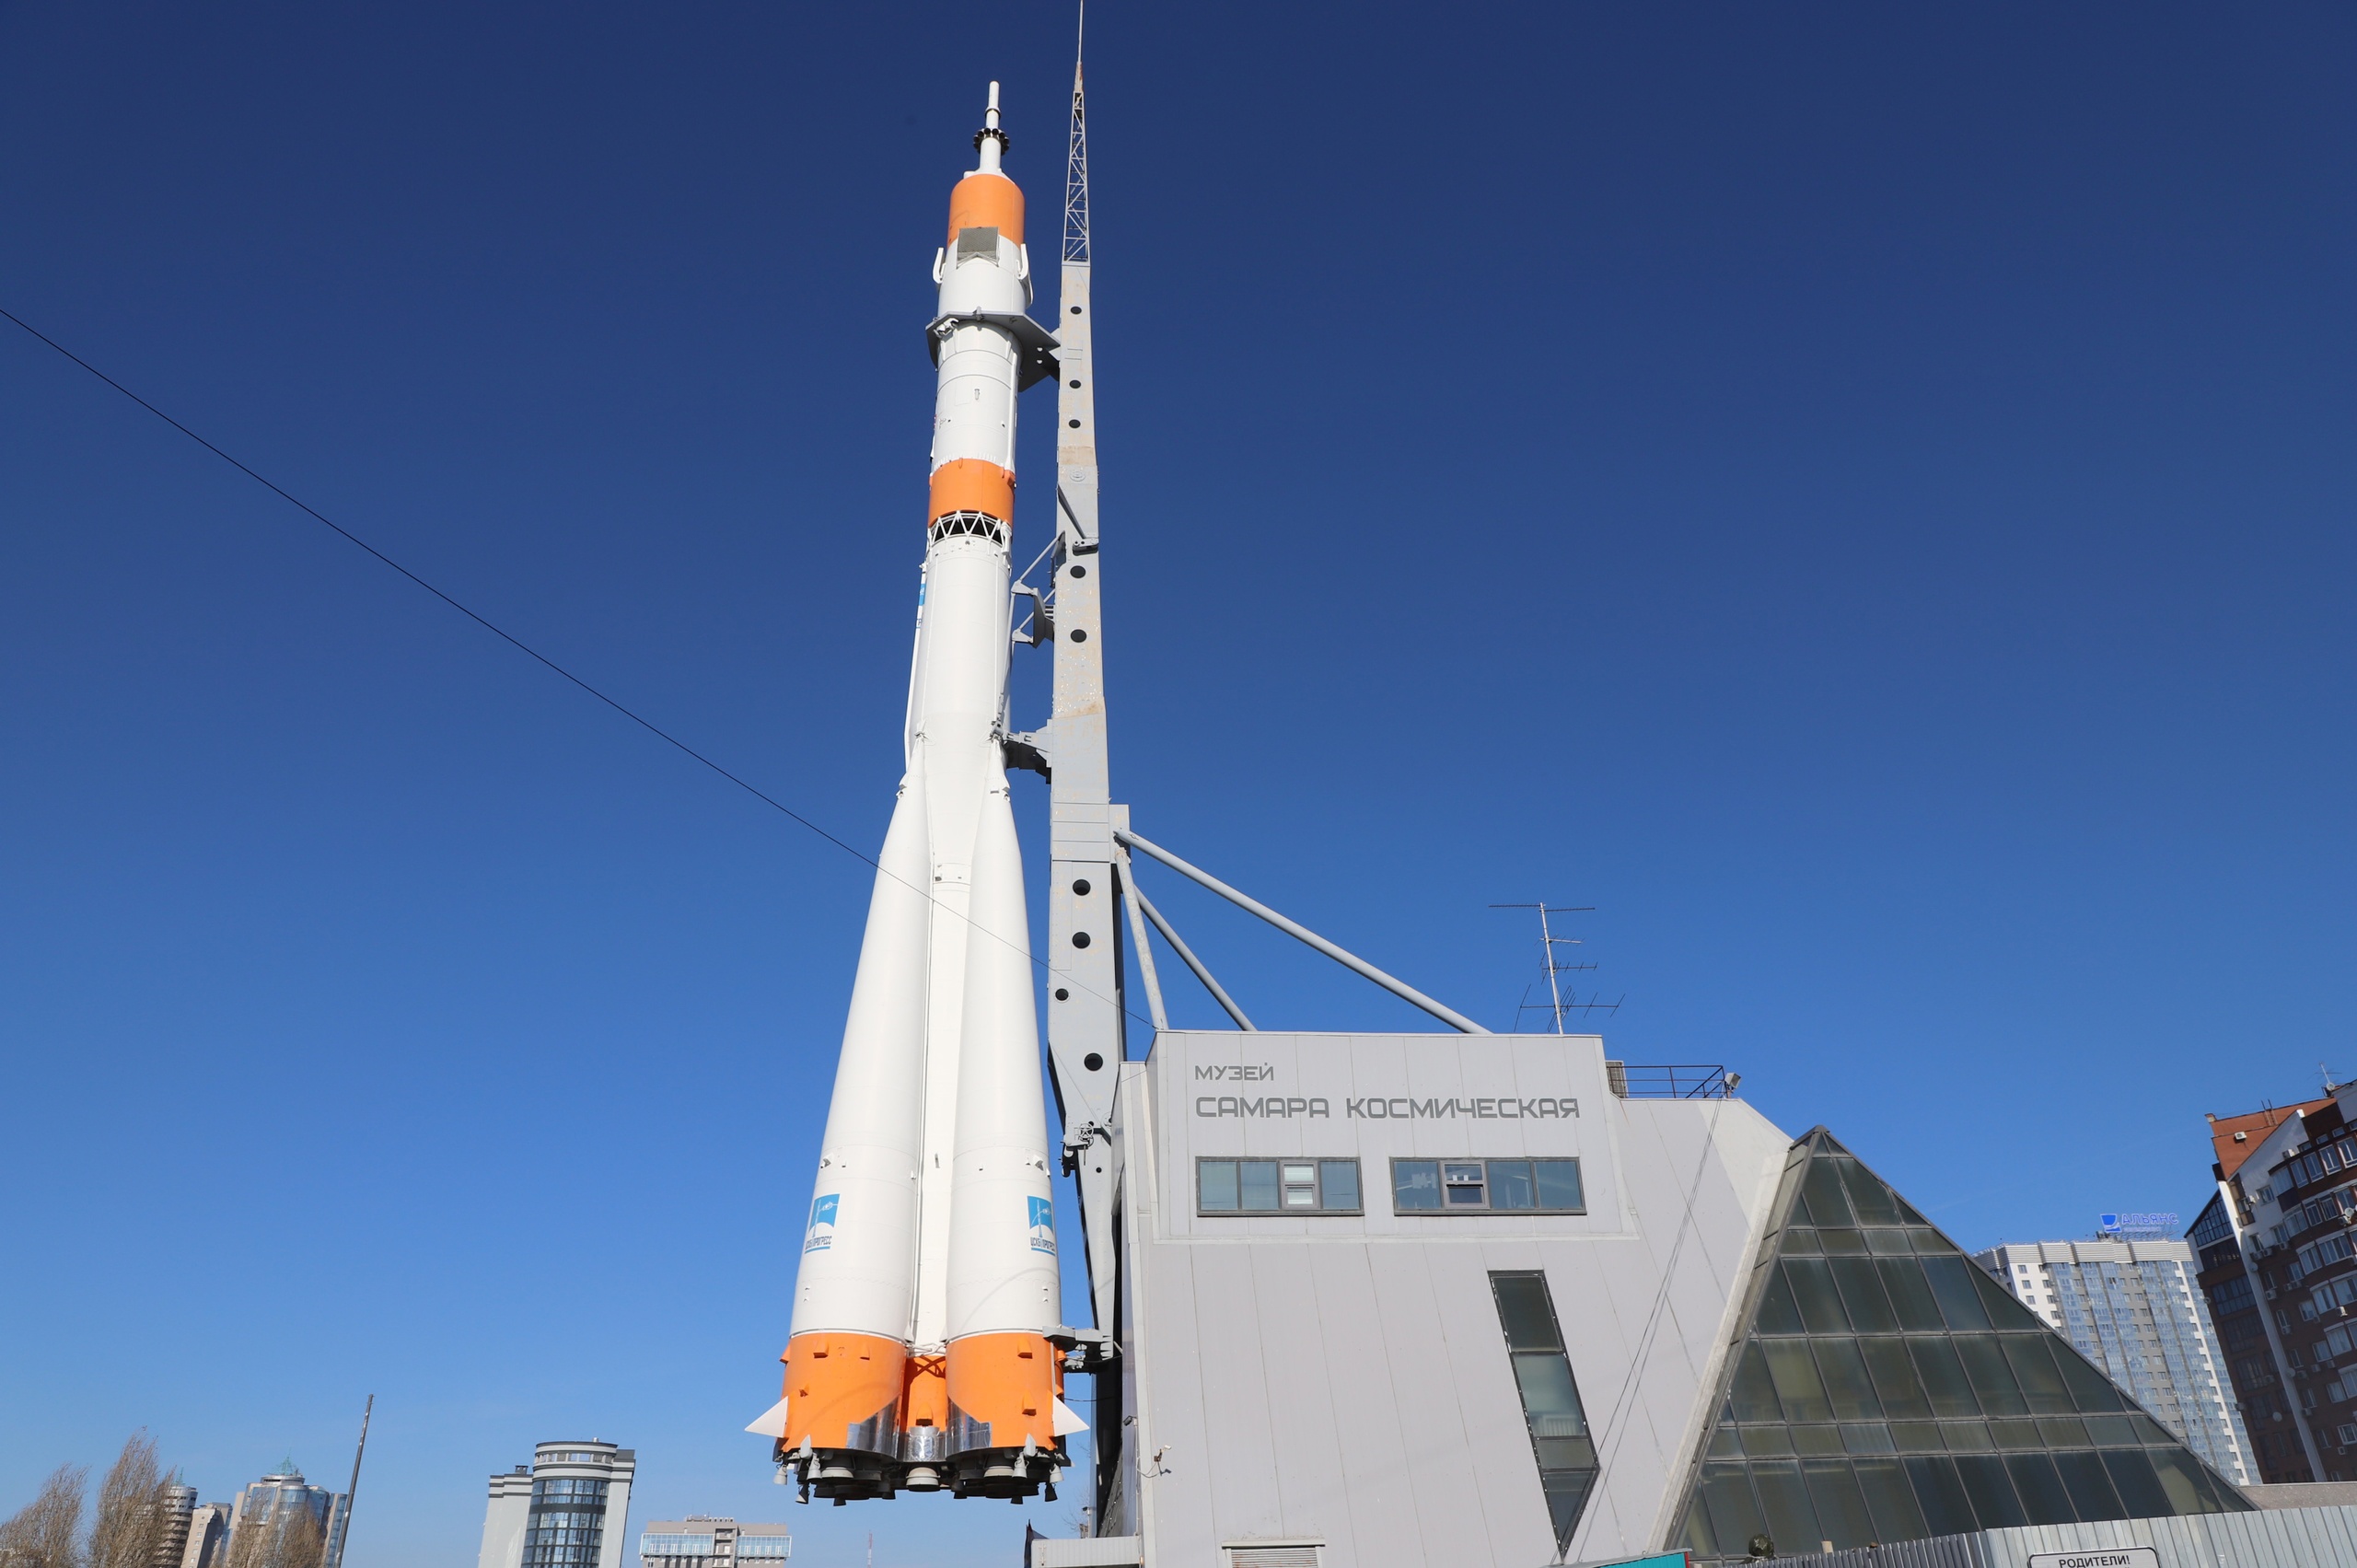 На конструкциях ракеты «Союз» у музея «Самара космическая» начали устанавливать датчики мониторинга